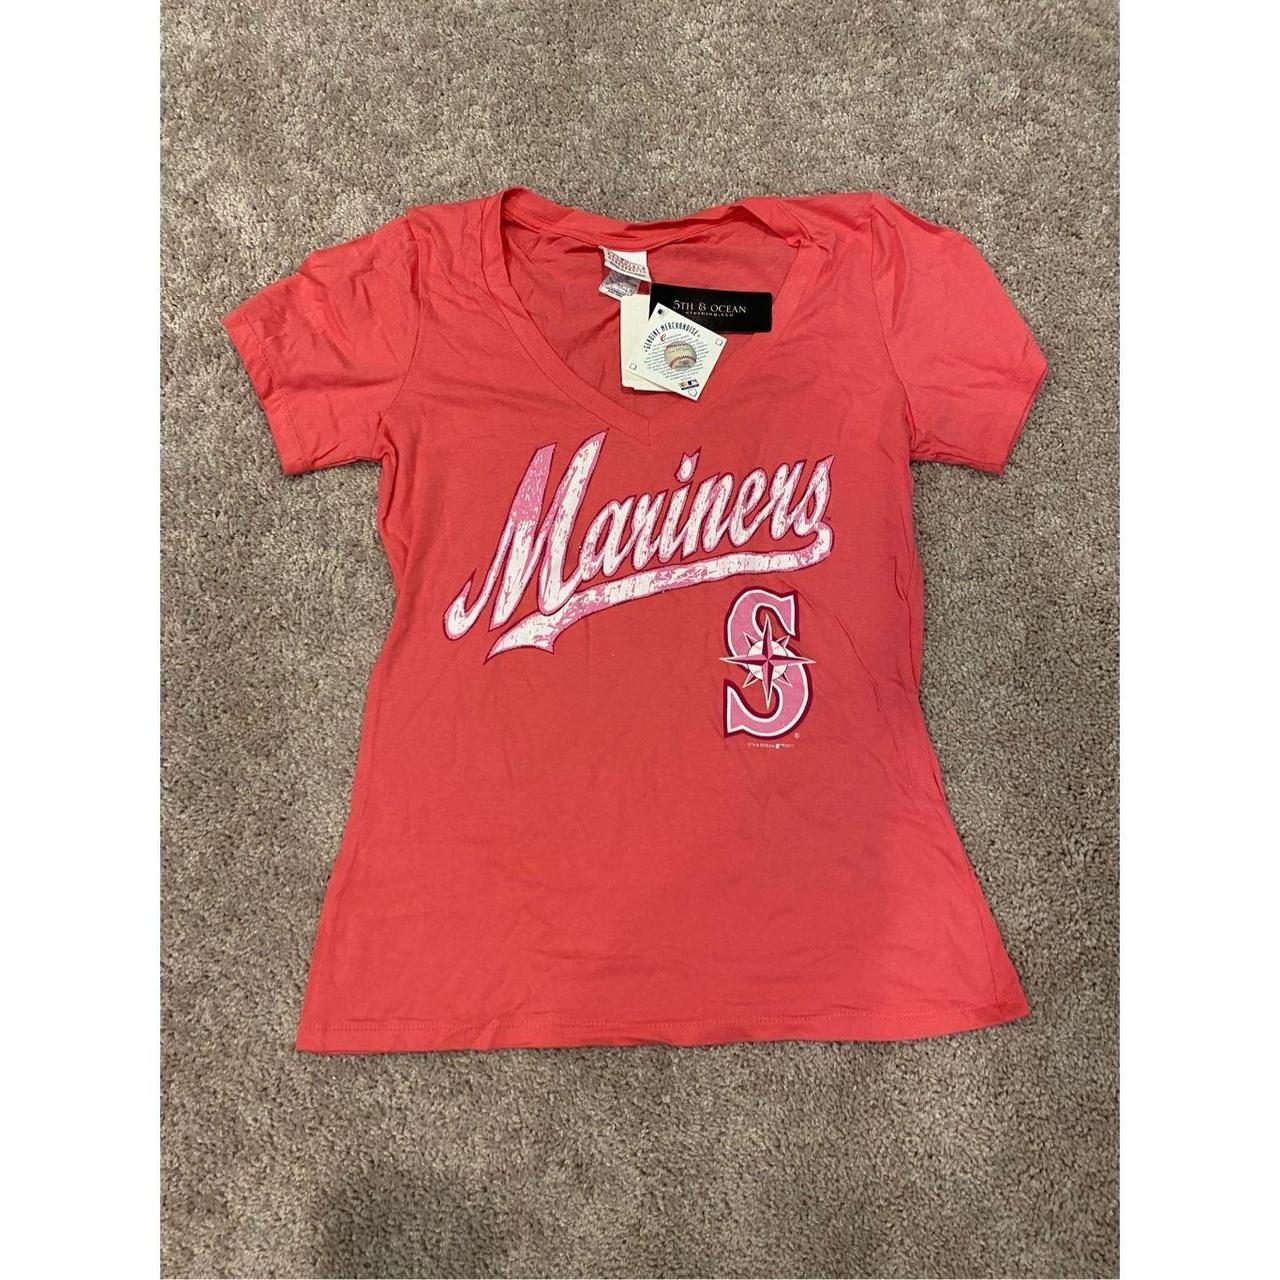 MLB Women's Shirt - Red - L